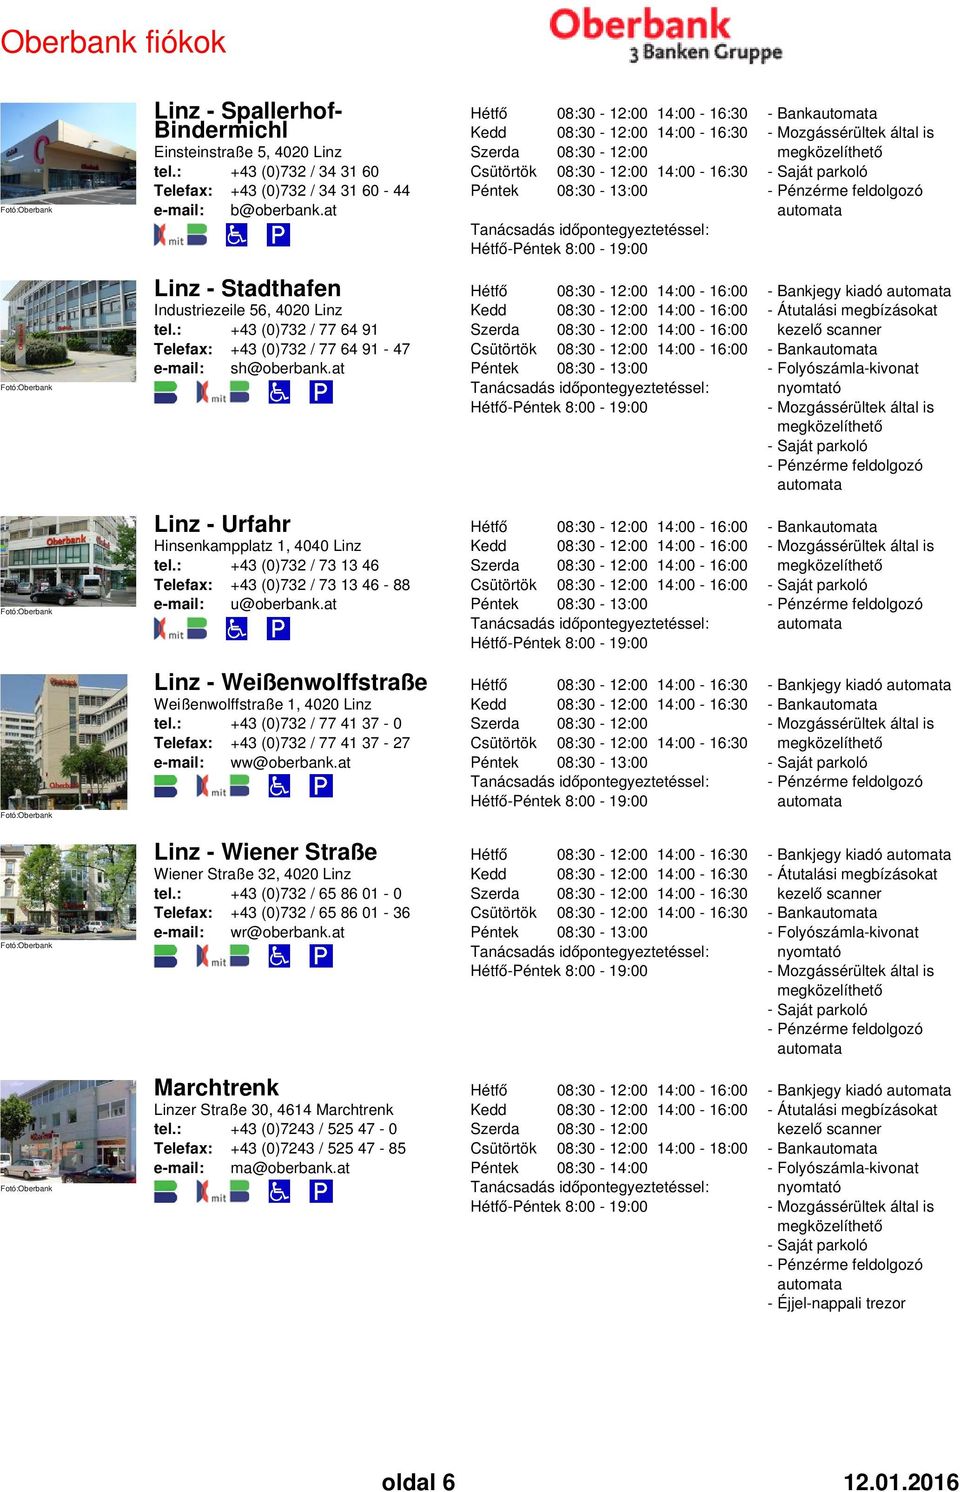 at - 8:00-19:00 - Átutalási megbízásokat kezelő scanner Linz - Urfahr Hinsenkampplatz 1, 4040 Linz tel.: +43 (0)732 / 73 13 46 +43 (0)732 / 73 13 46-88 e-mail: u@oberbank.